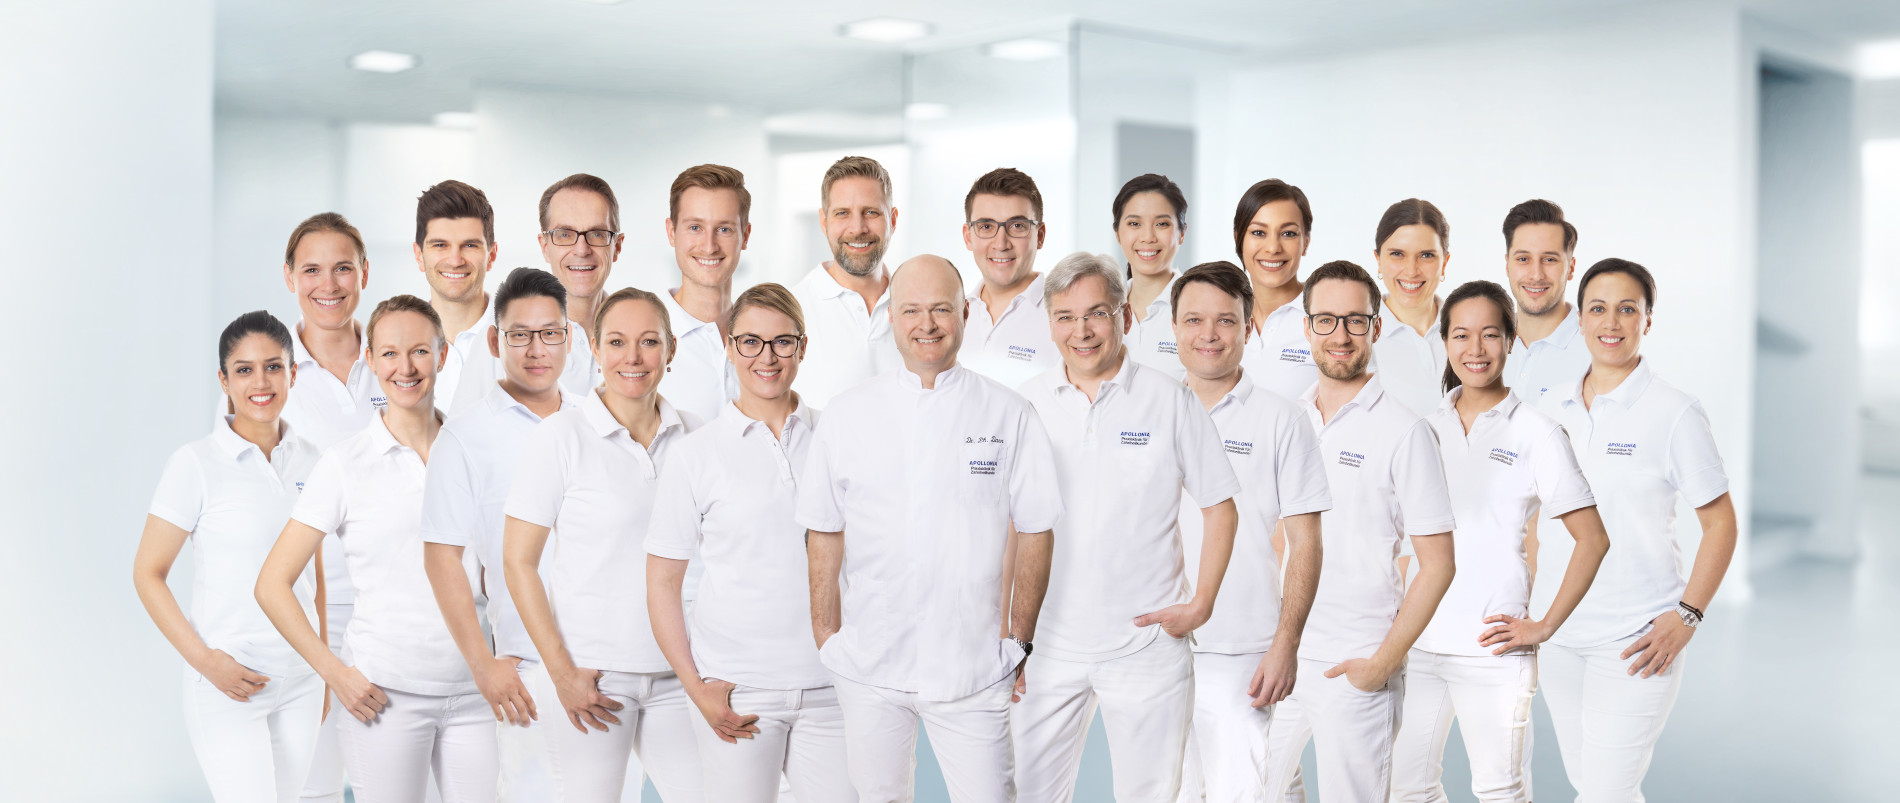 Zahnarzt für Langenfeld Teambild